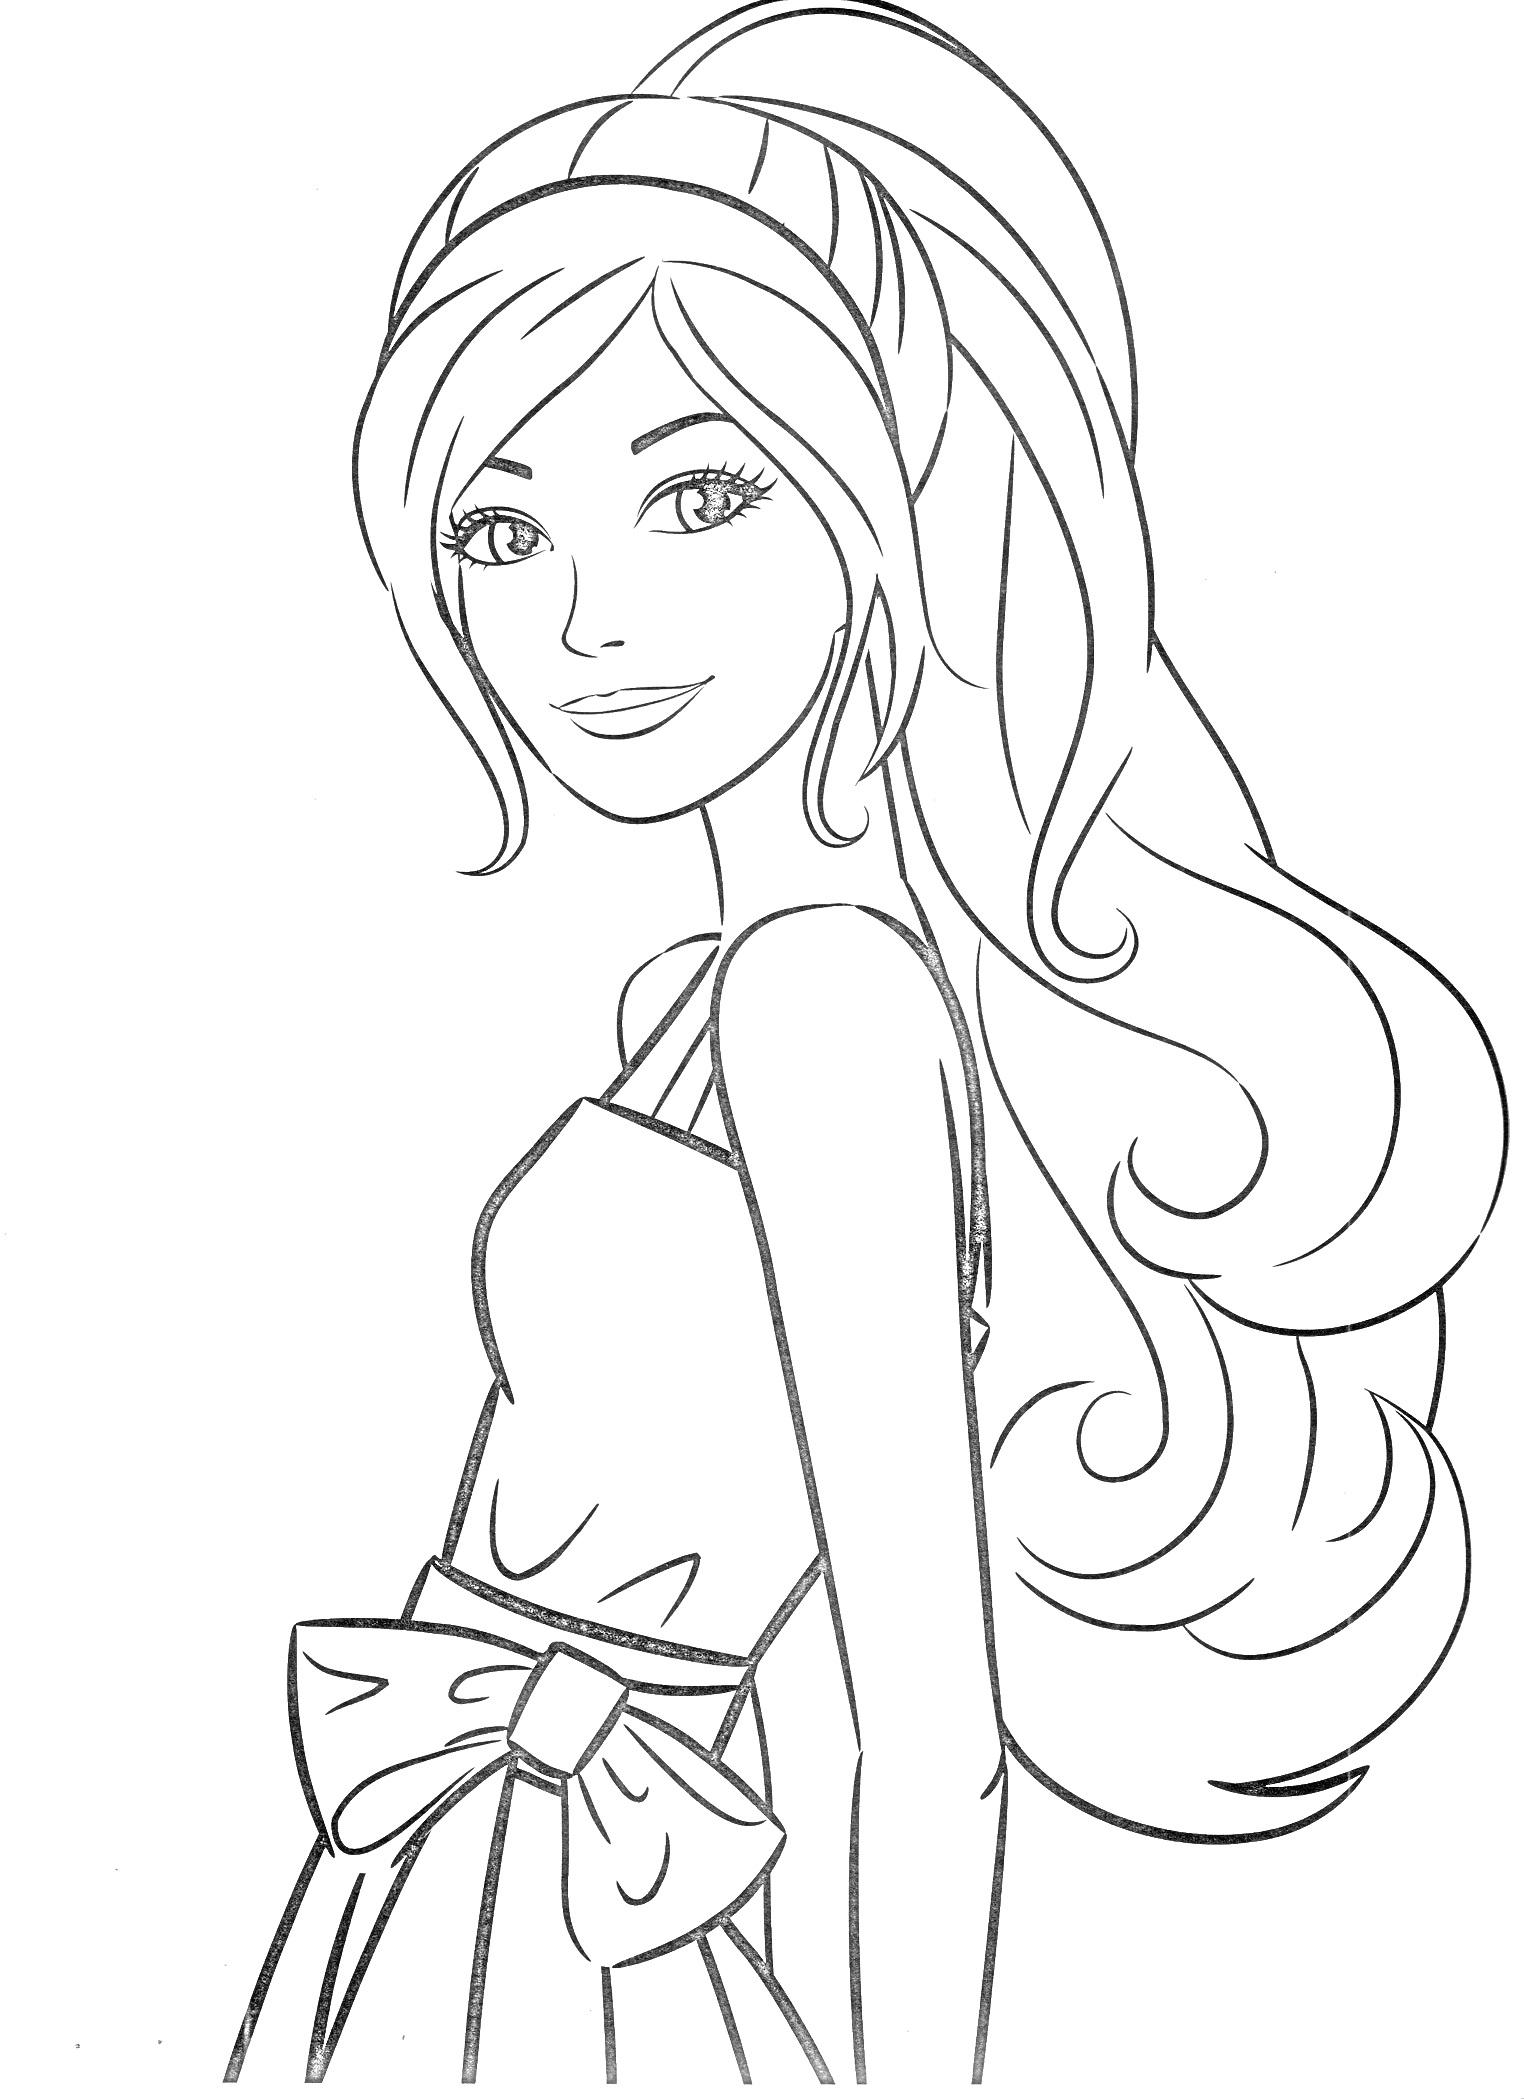 Раскраска Девушка в платье с бантом, распущенные длинные волосы, ободок на голове